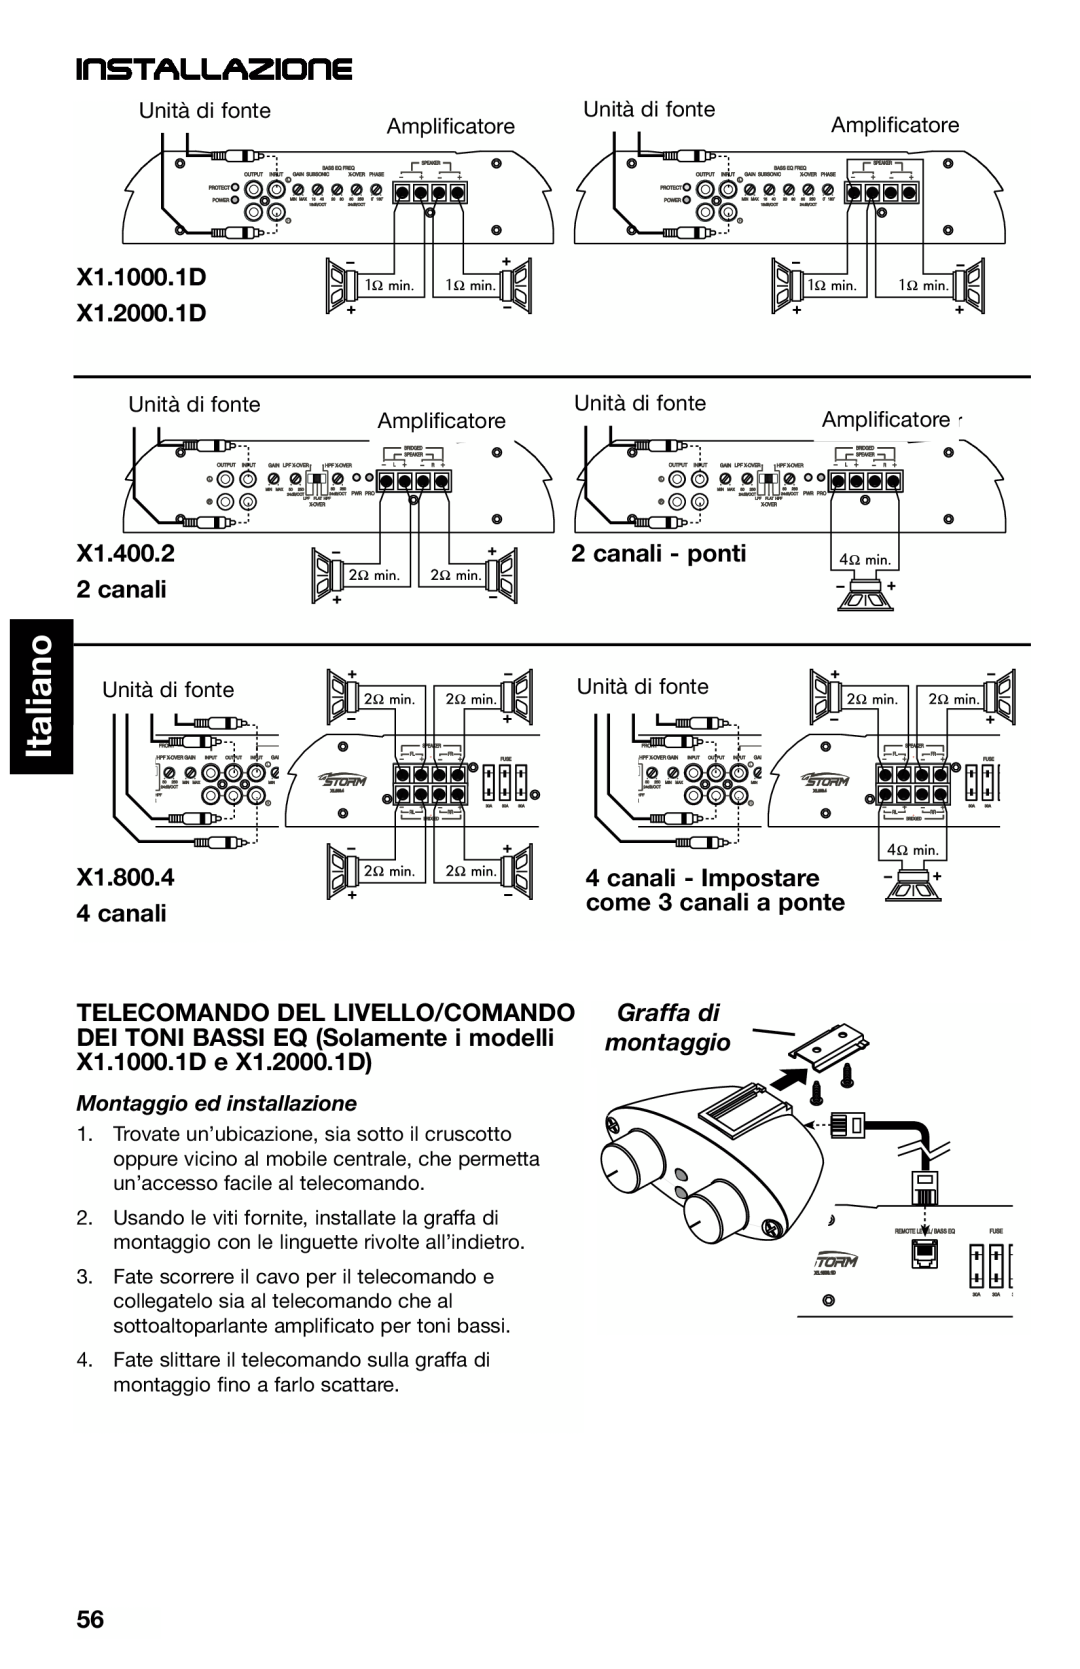 Lightning Audio manual Italiano, Installazione, X1.1000.1D X1.2000.1D, X1.400.2, canali - ponti, X1.800.4 4 canali 